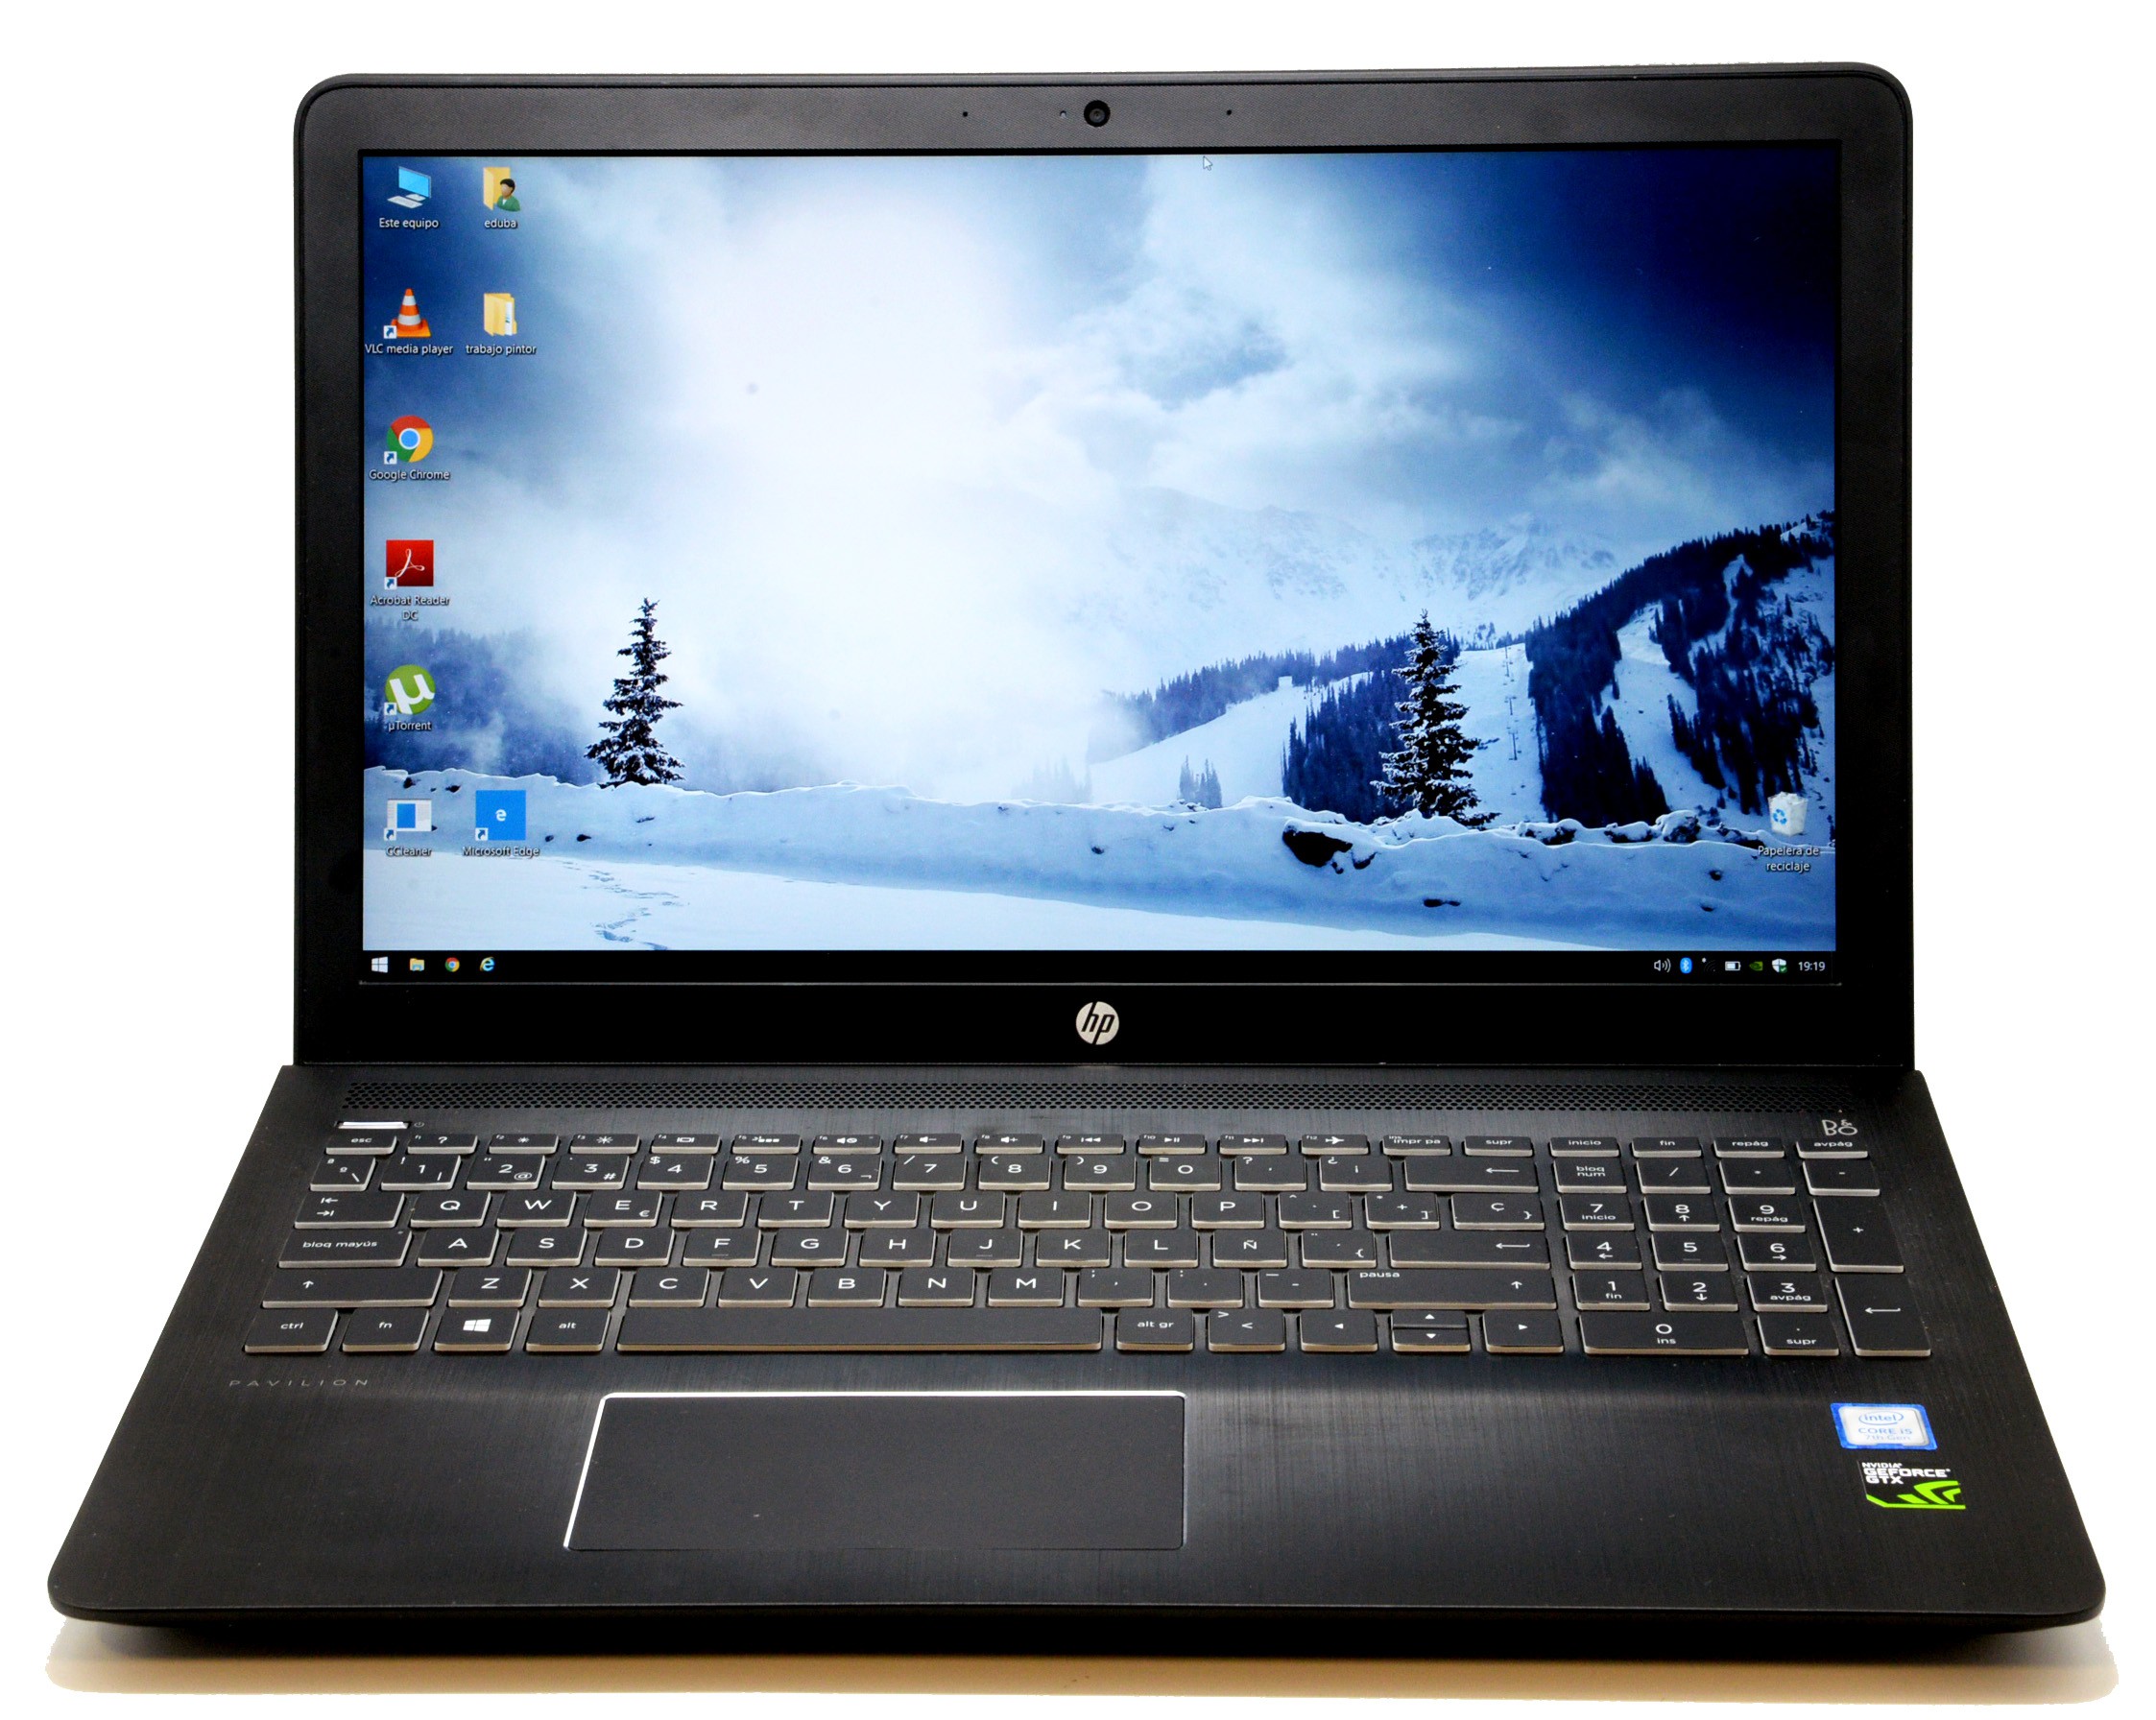 HP Pavilion Power Laptop 15-cb0XX varios temas - Comunidad de Soporte HP -  1092505